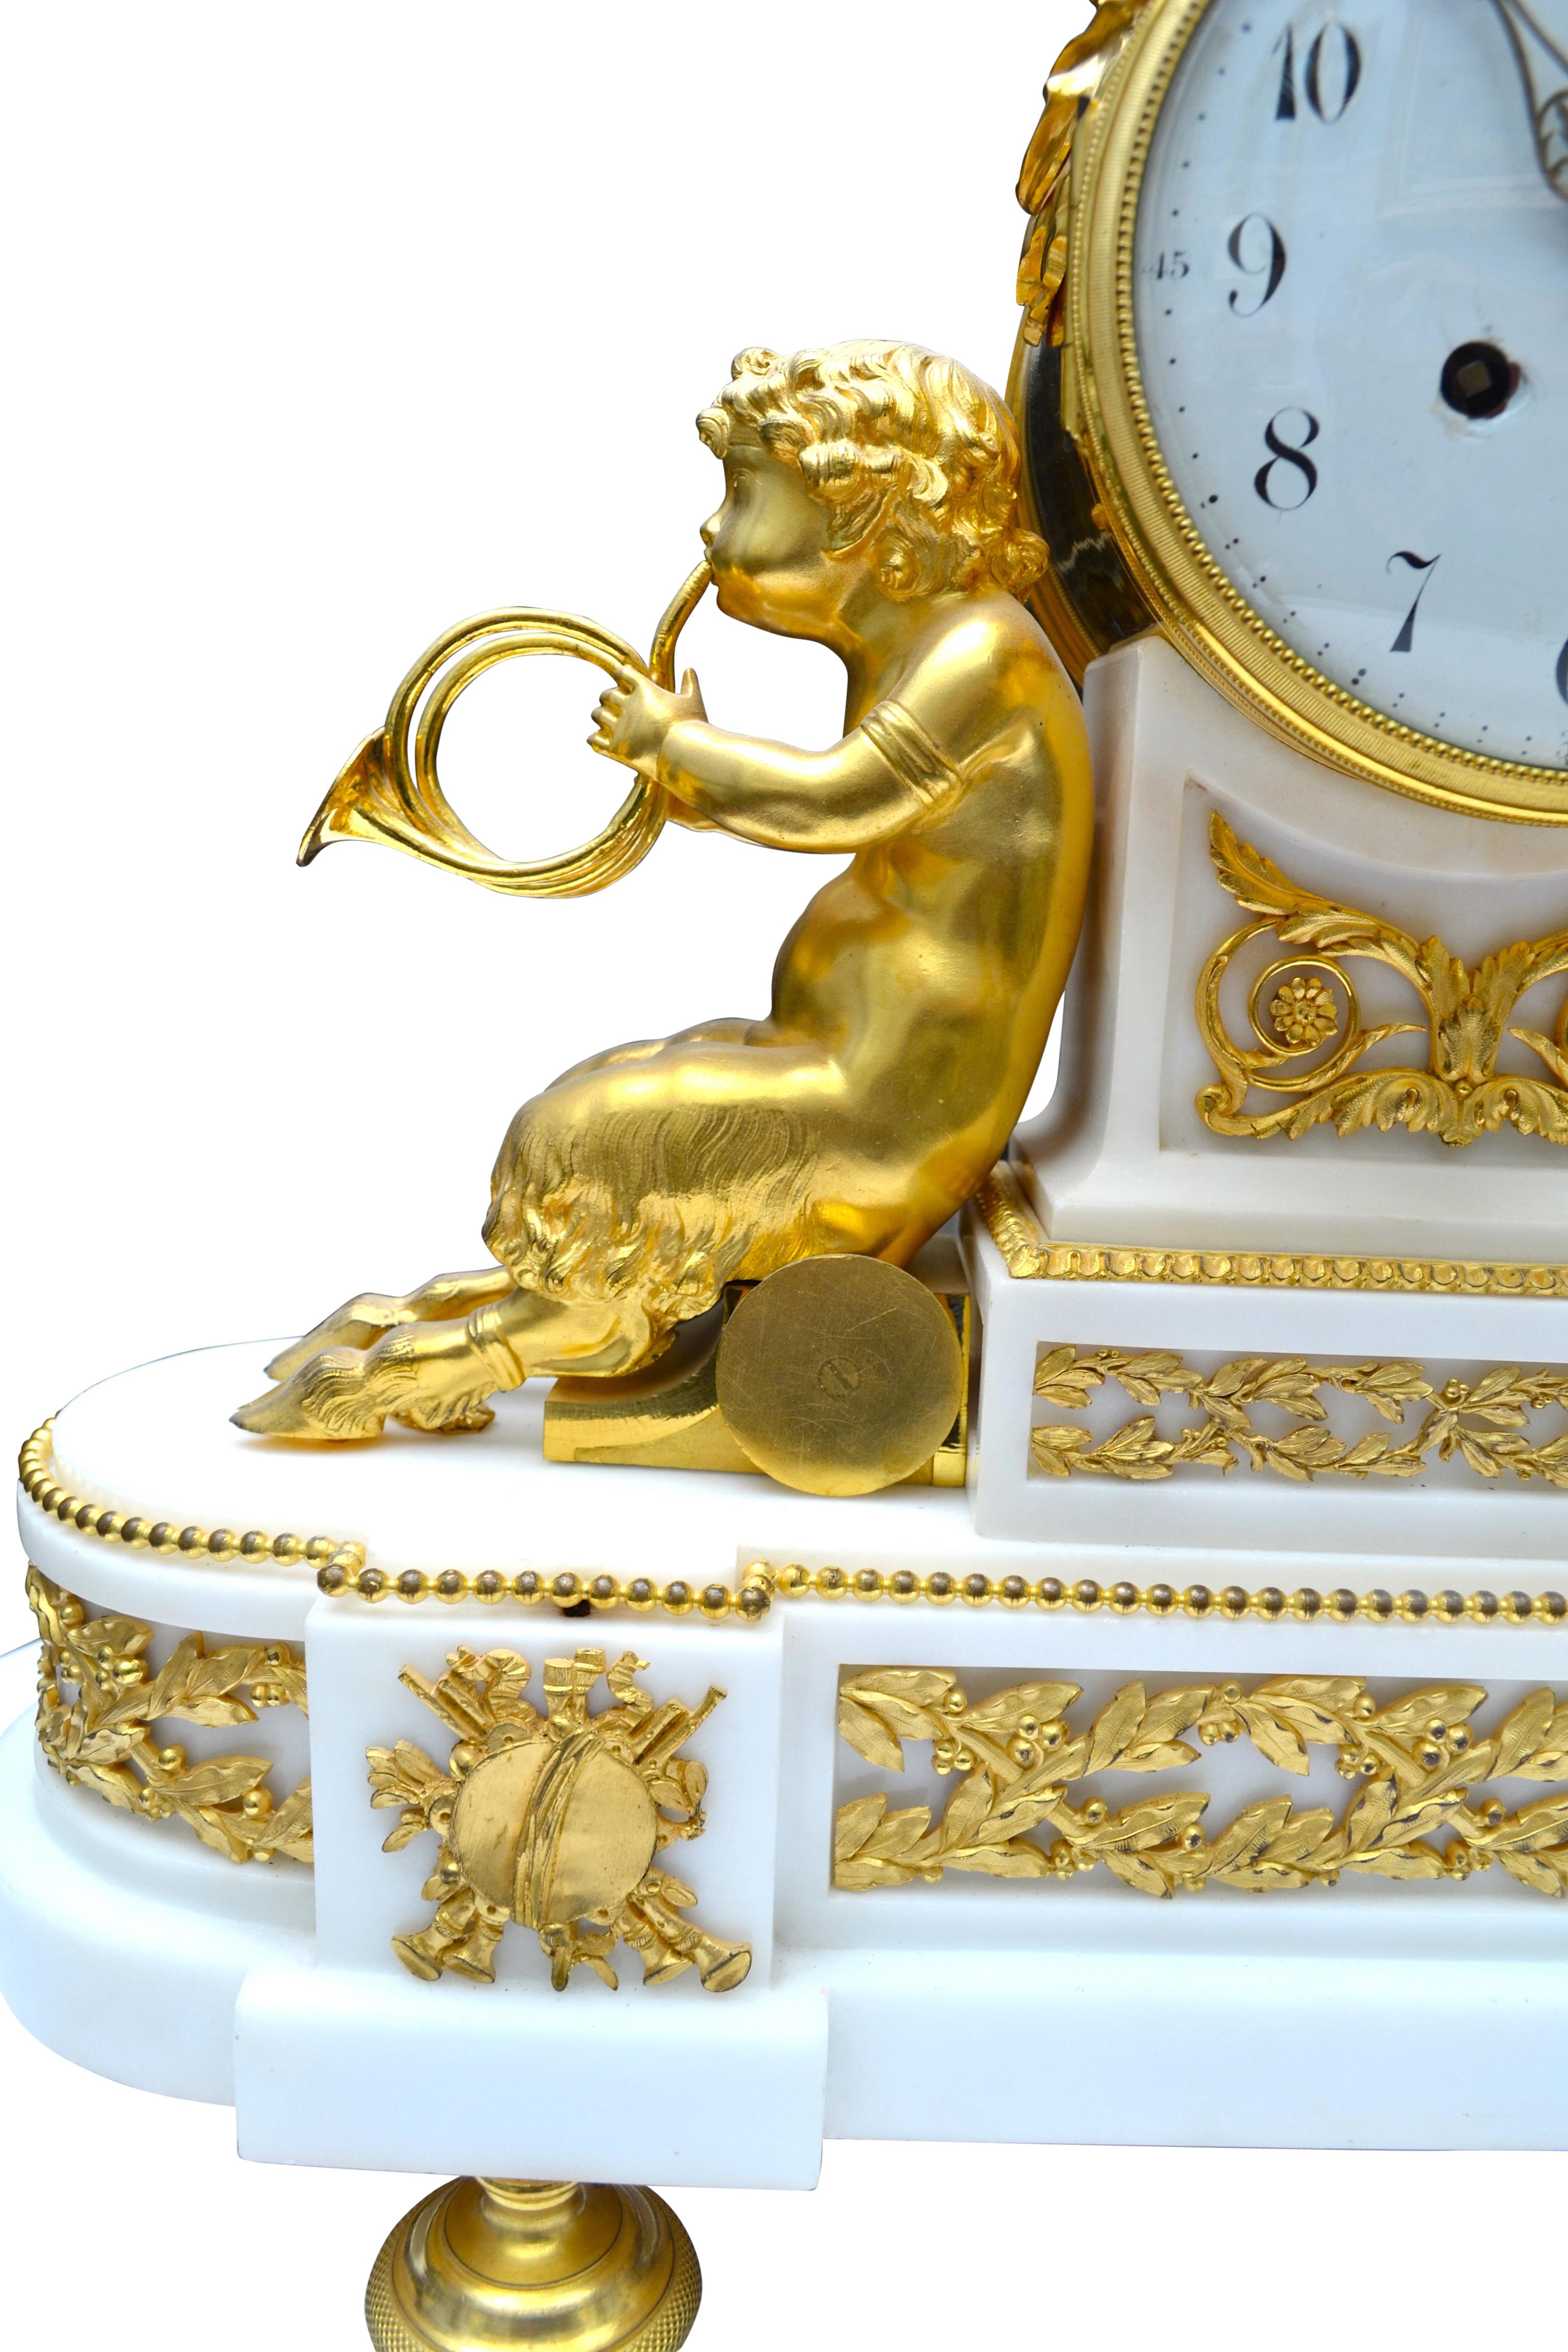 Uhr im Stil Ludwigs XVI. mit Bacchantin und musikalischen Satyrn. Das Gehäuse der Uhr zeigt zwei junge Satyrn aus vergoldeter Bronze, die jeweils zwei Hörner halten. Sie lehnen sich an den geformten weißen Marmorsockel, der das weiße